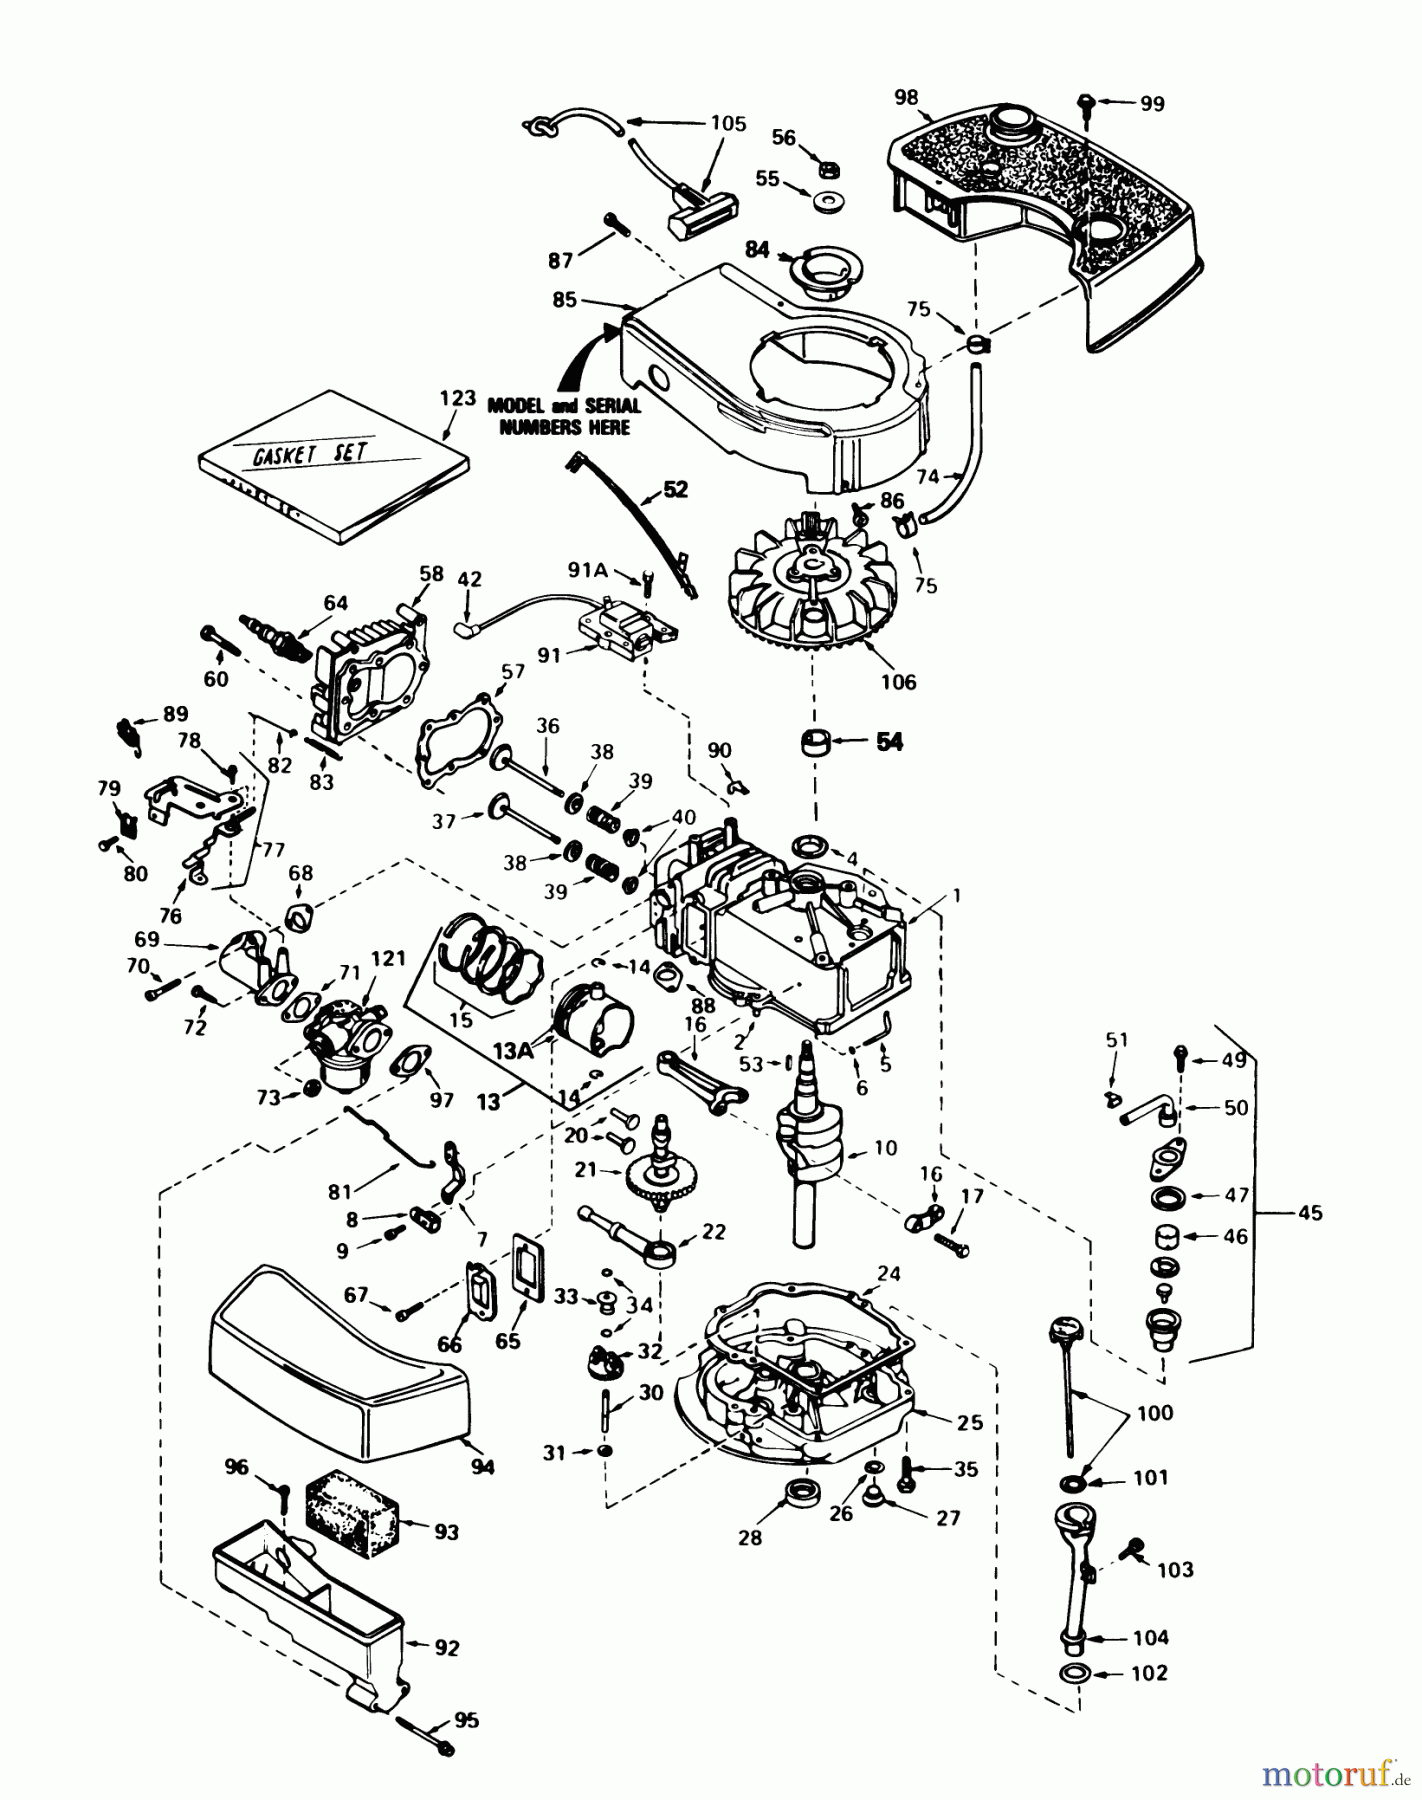  Toro Neu Mowers, Walk-Behind Seite 1 20715 - Toro Lawnmower, 1984 (4000001-4999999) ENGINE TECUMSEH MODEL NO. TNT100-10087E